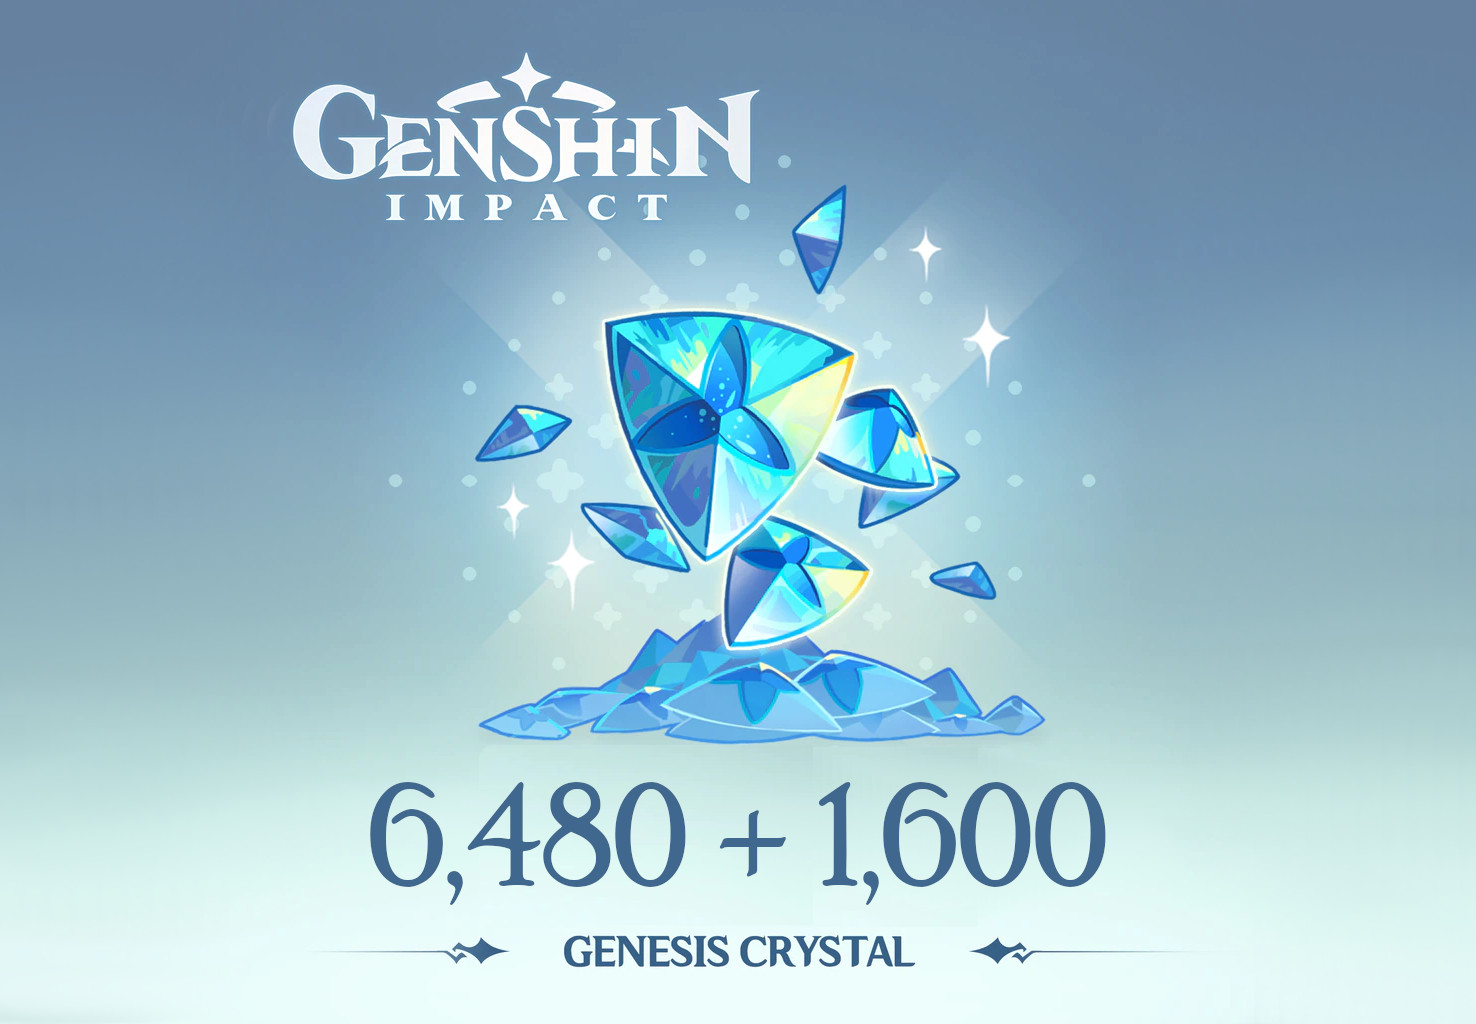 Genshin Impact - 6,480 + 1,600 Genesis Crystals Reidos Voucher, $107.29